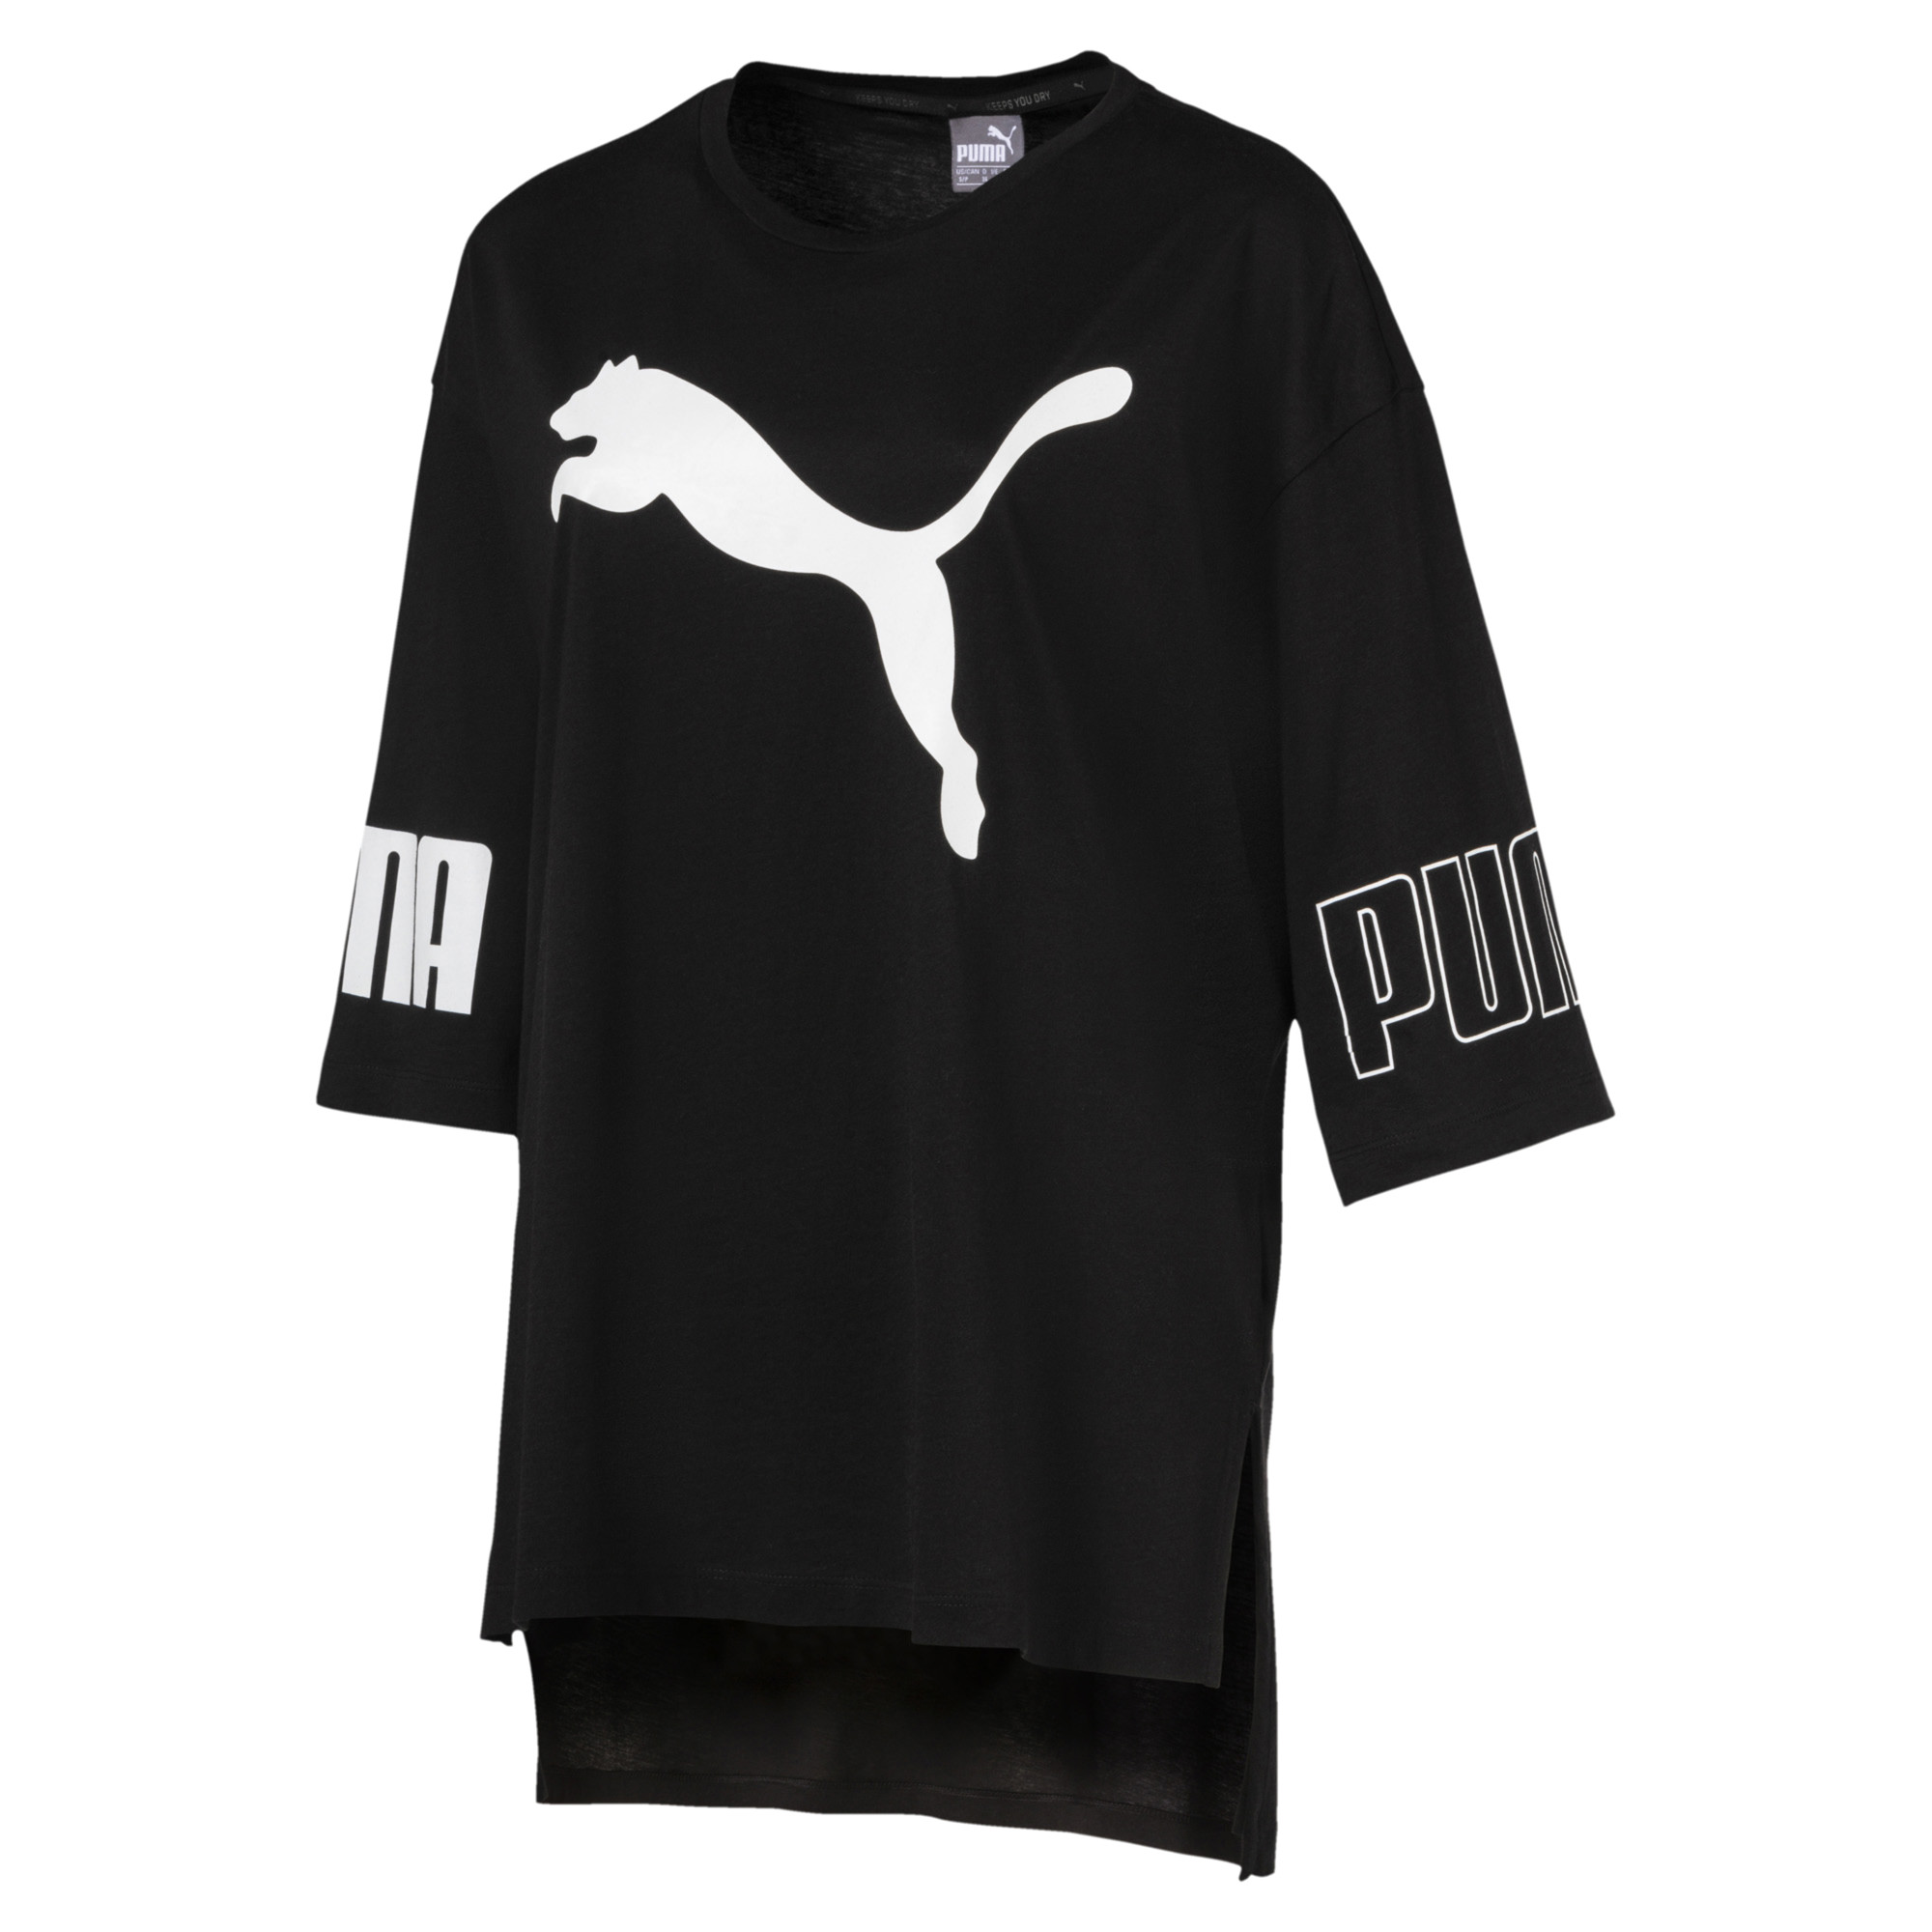 Modern Sport Women’s Logo T-Shirt, $45.00 from Puma